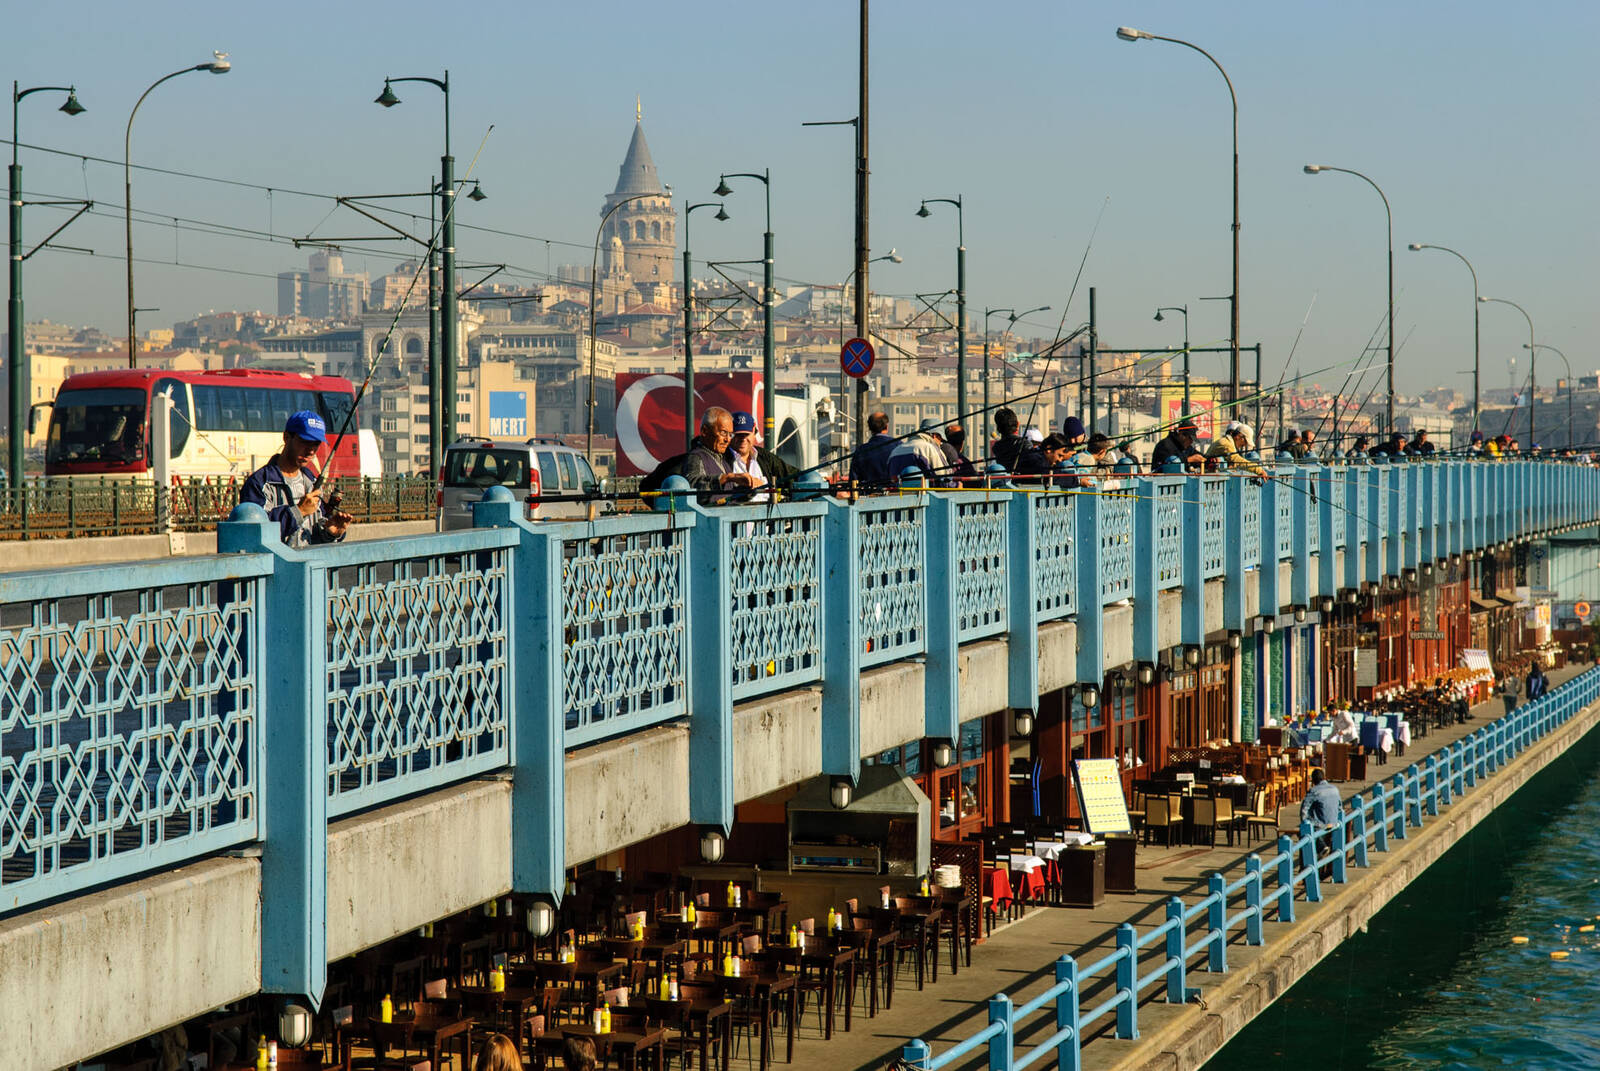 Image of Galata Bridge by Luka Esenko